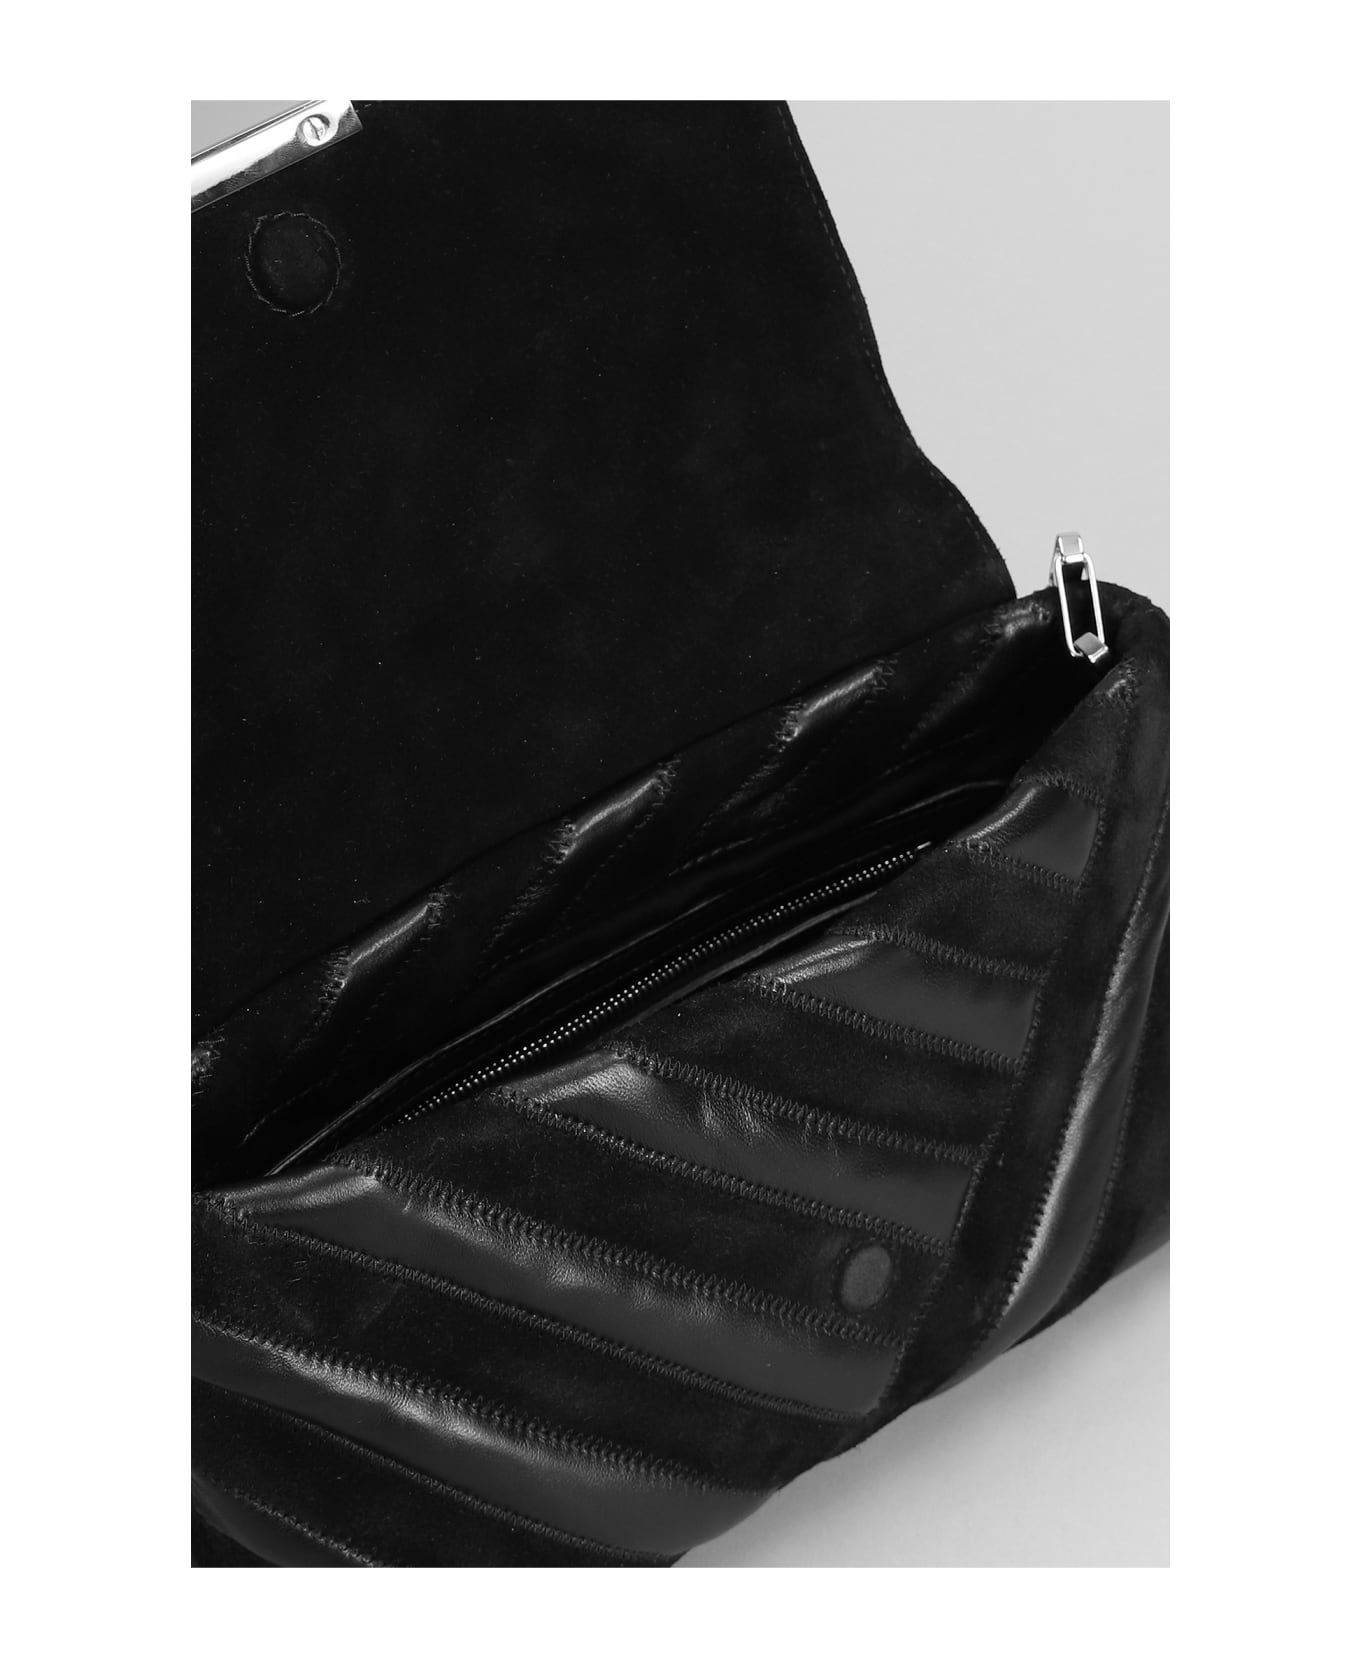 Isabel Marant Merine Shoulder Bag In Black Suede And Leather - black